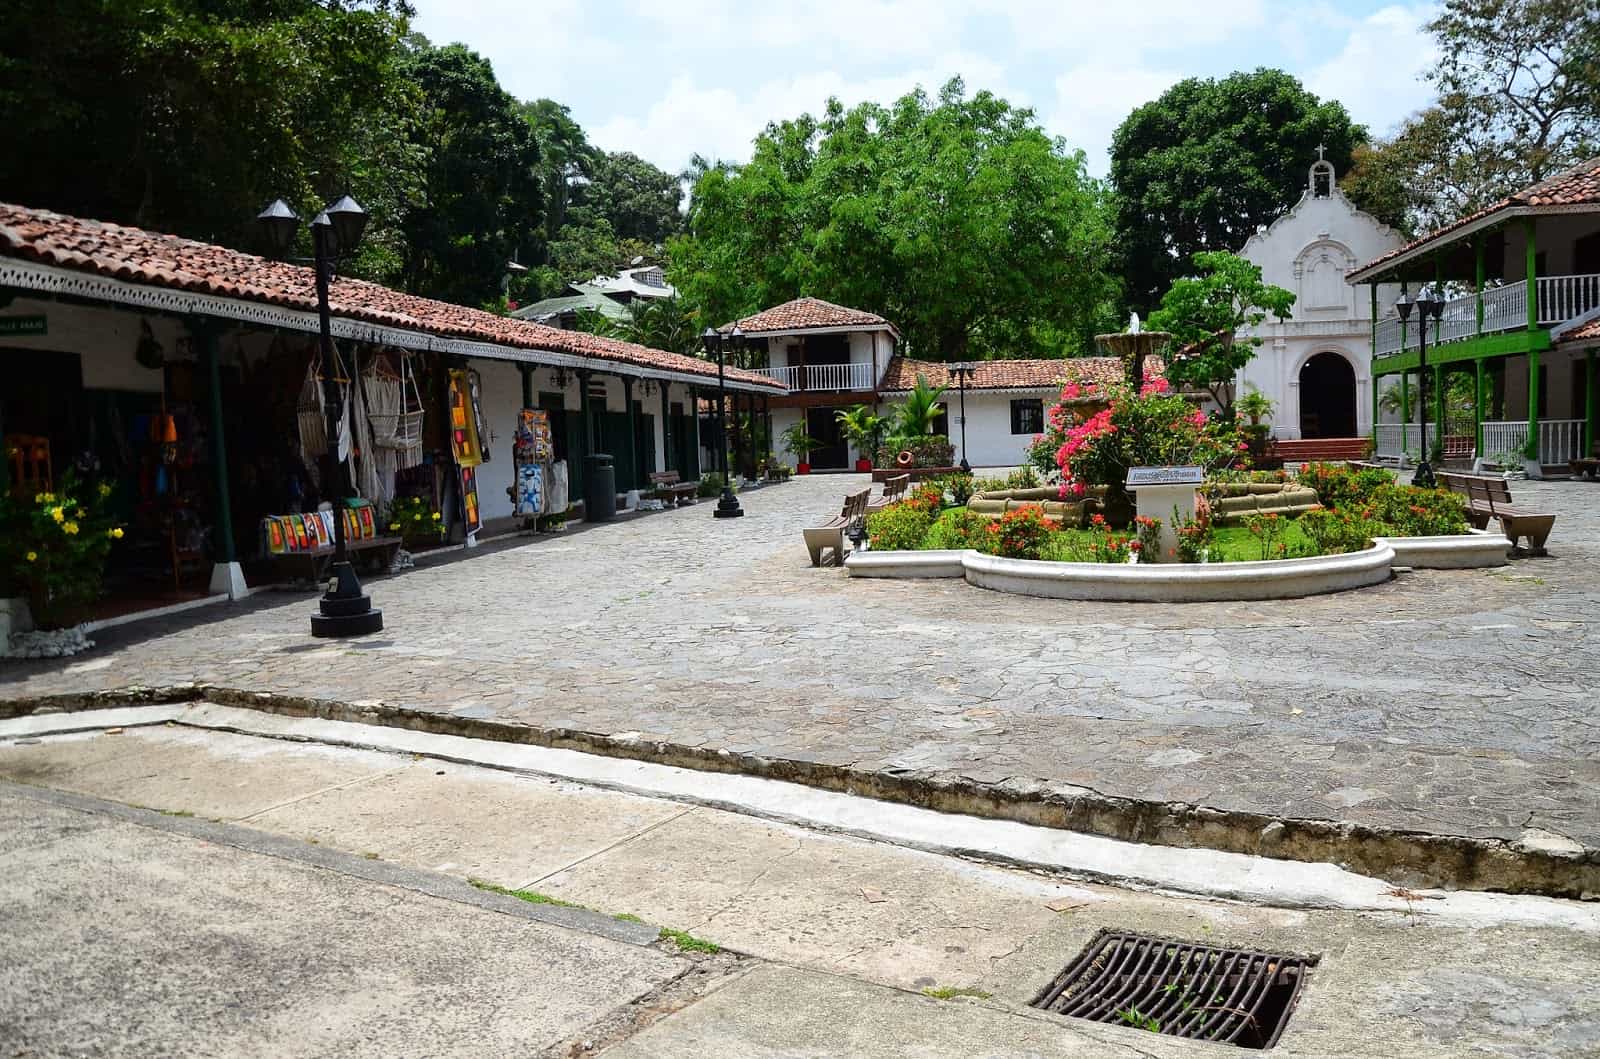 Mestizo village at Mi Pueblito in Panama City